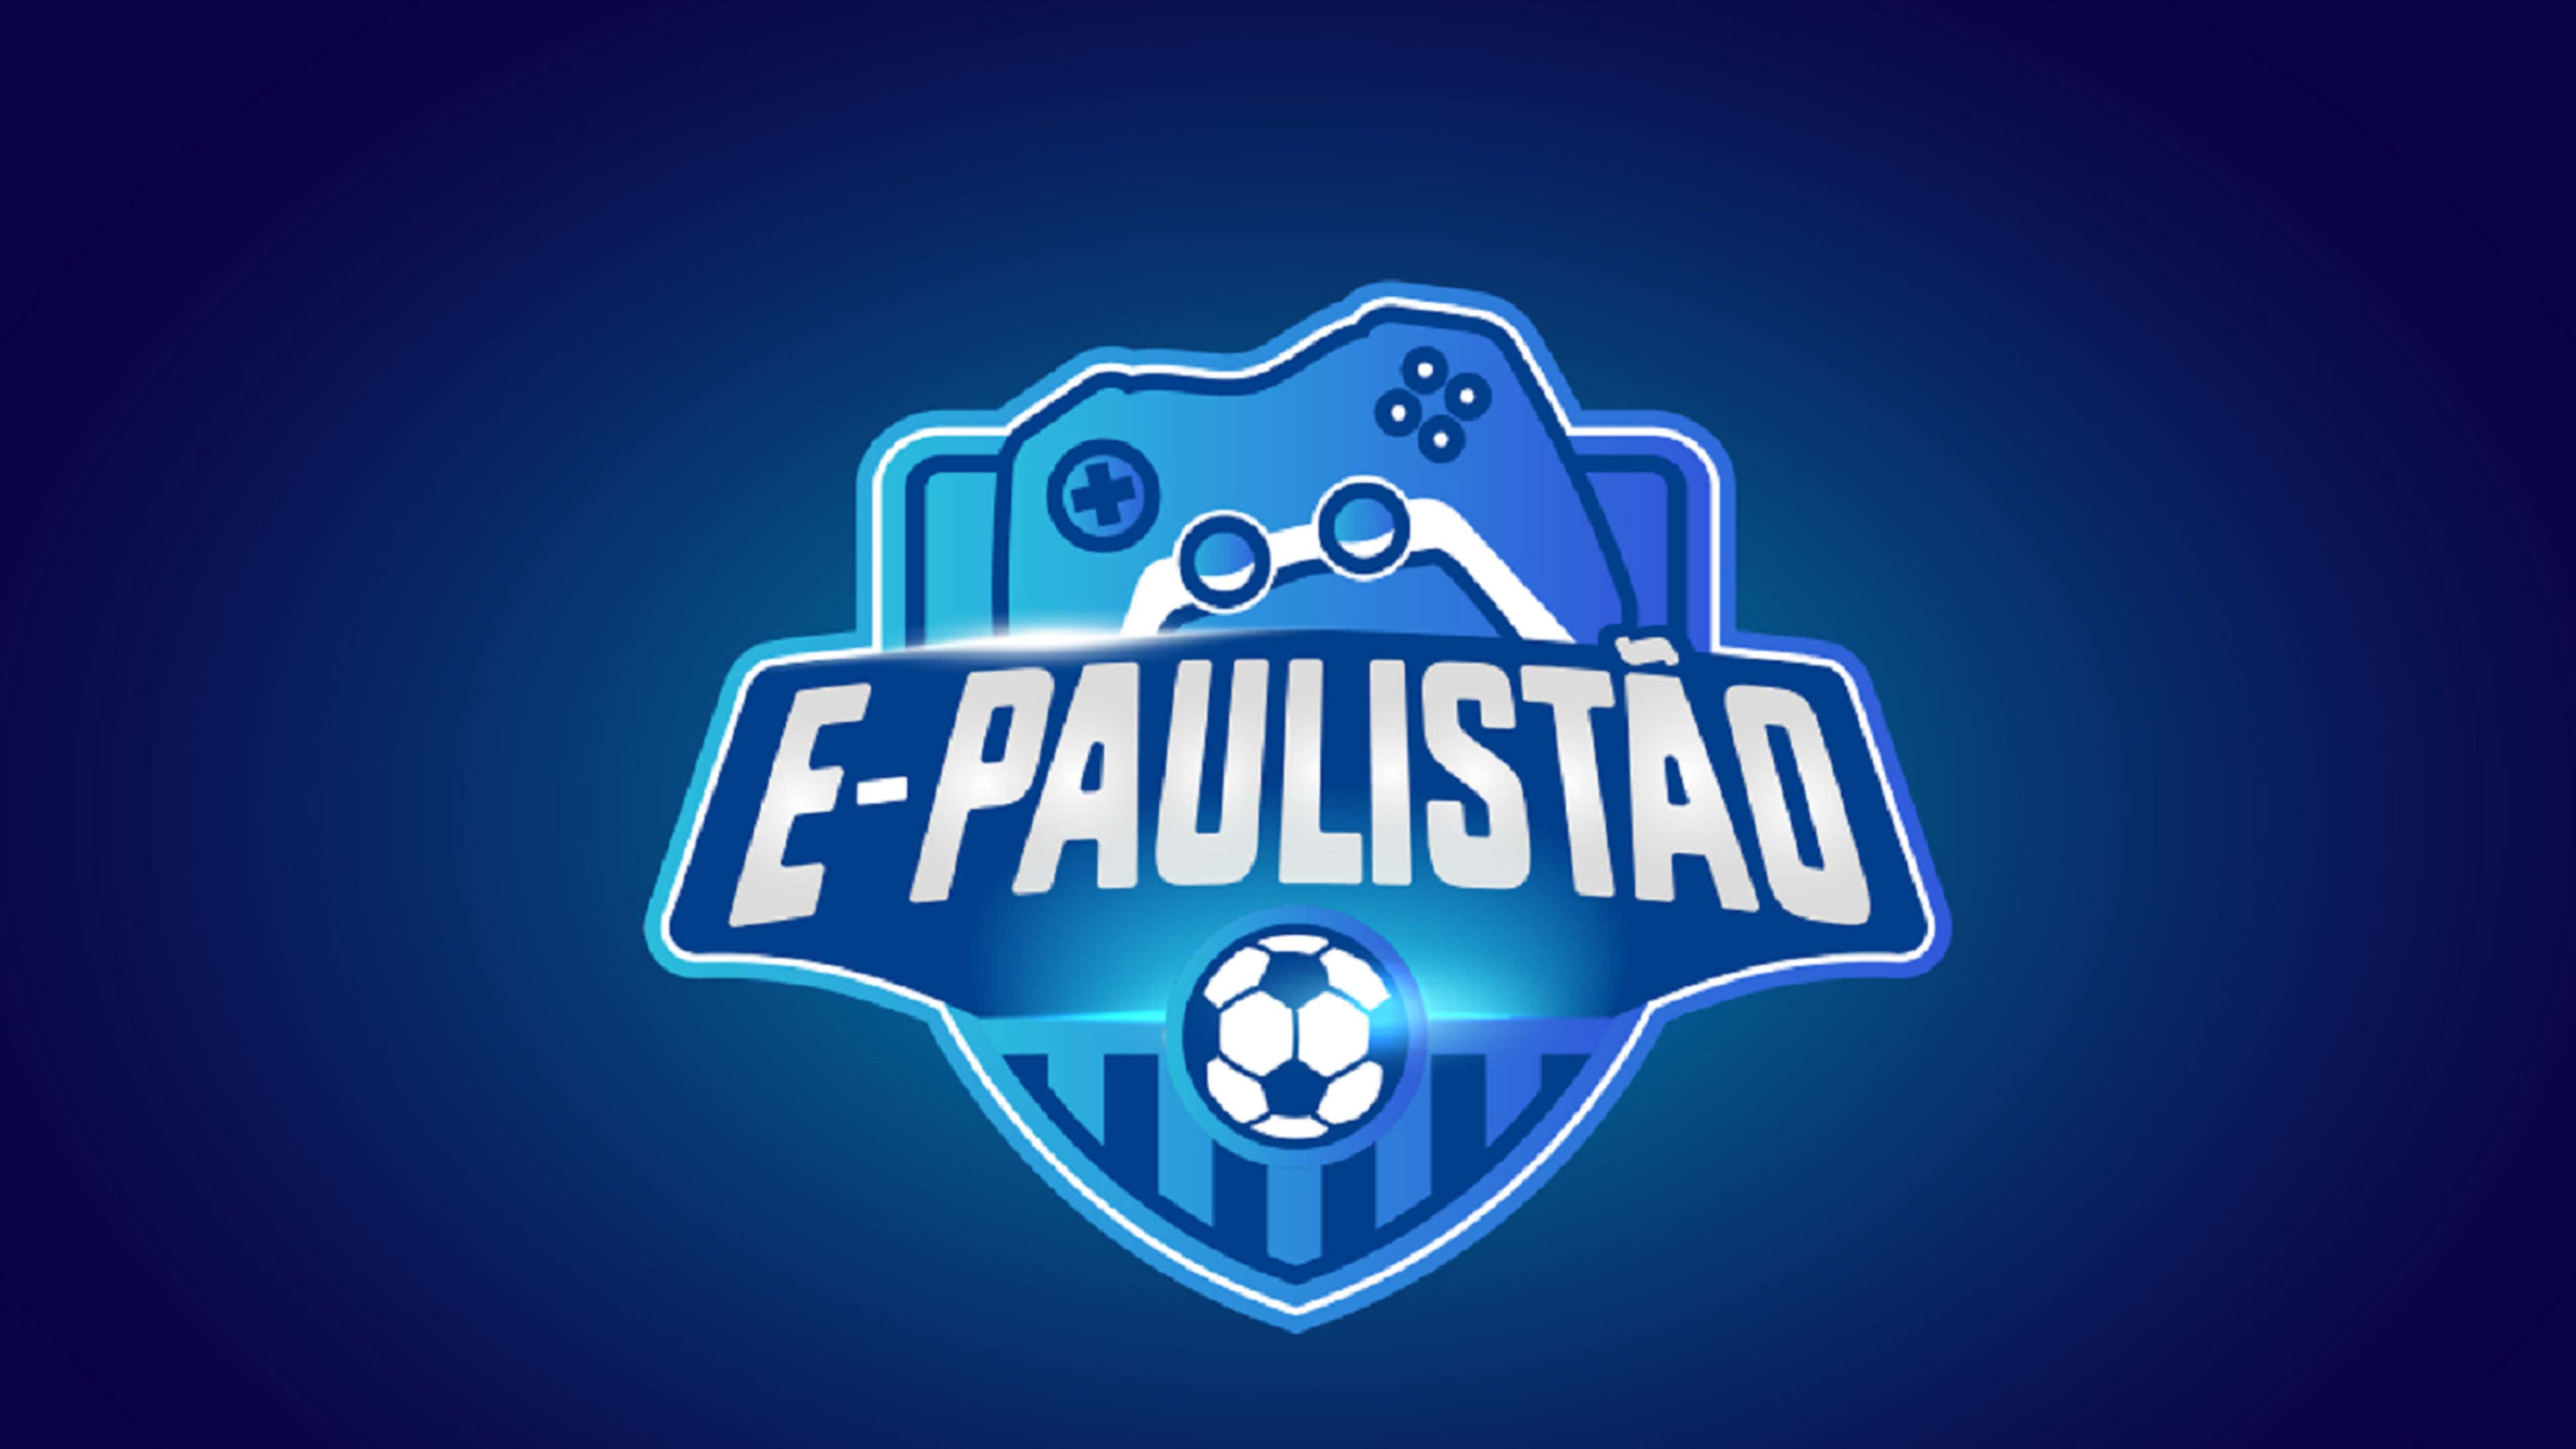 Federação Paulista sorteia grupos do Campeonato Paulista 2021